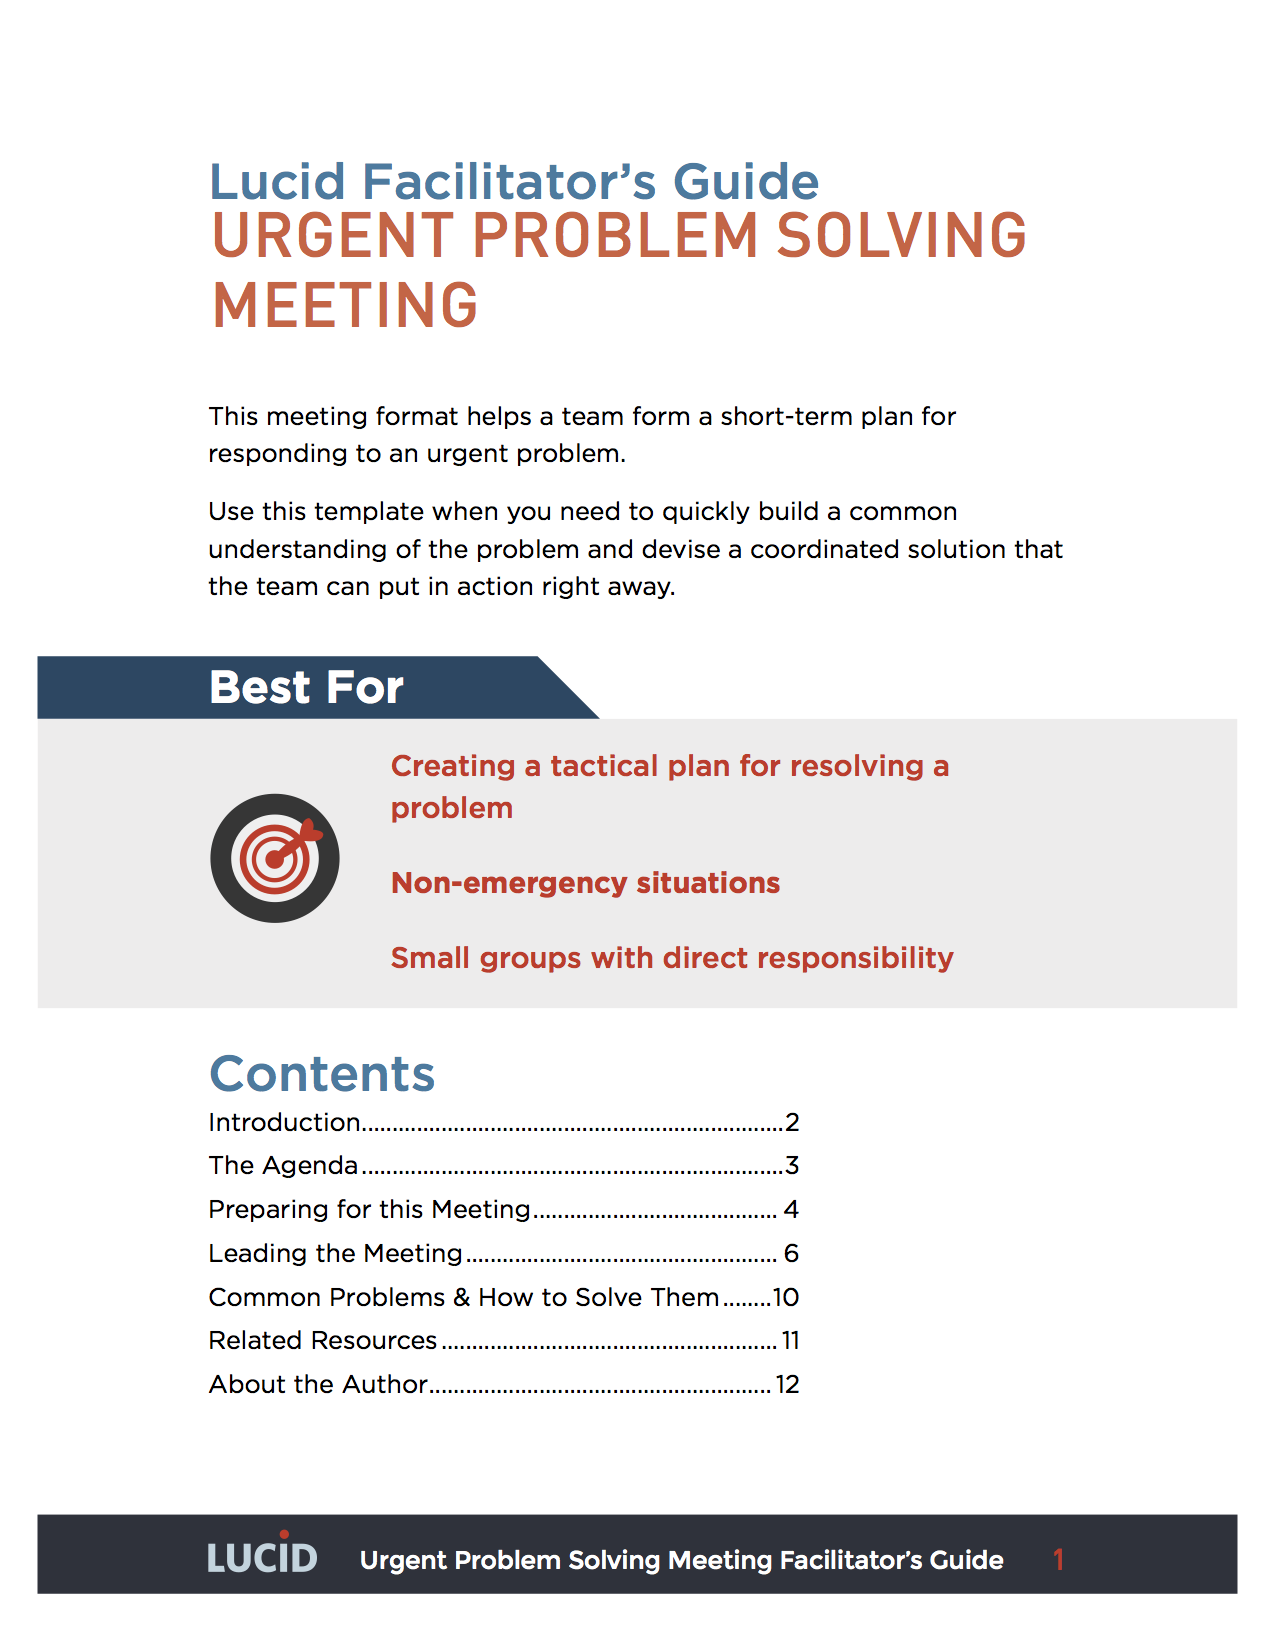 Urgent-Problem-Solving-Facilitators-Guide.png